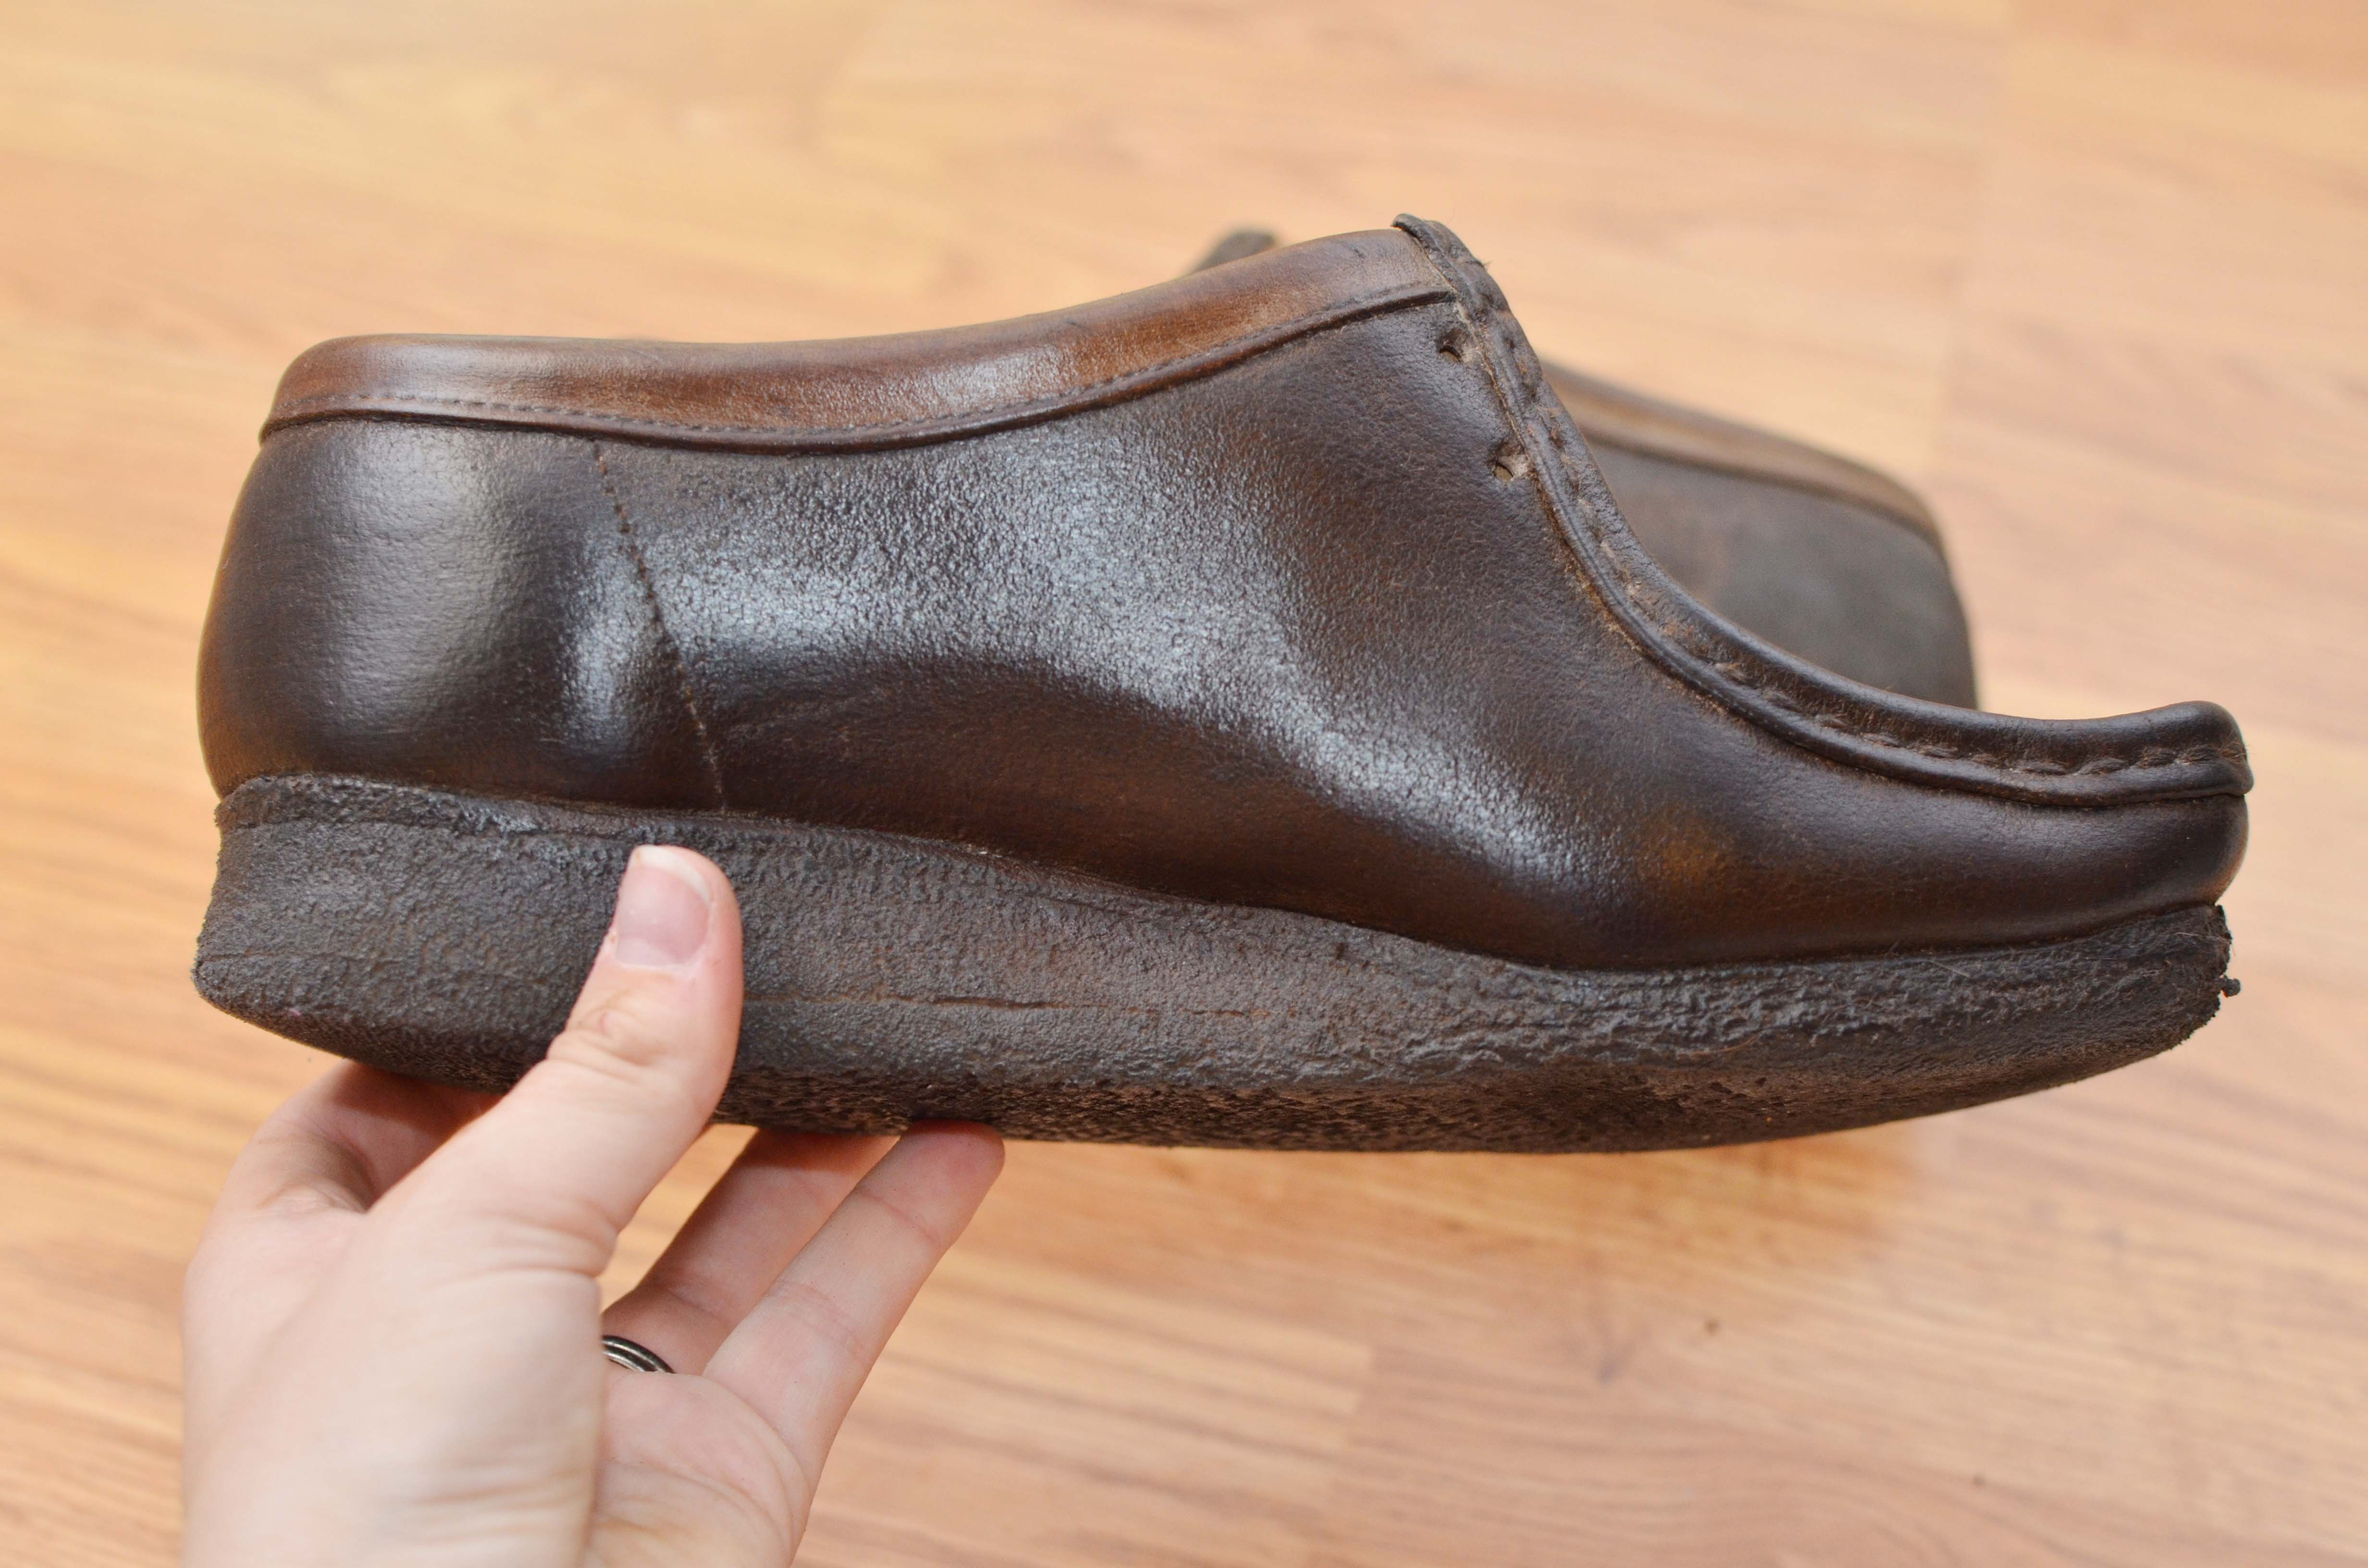 sweat leather shoe polish